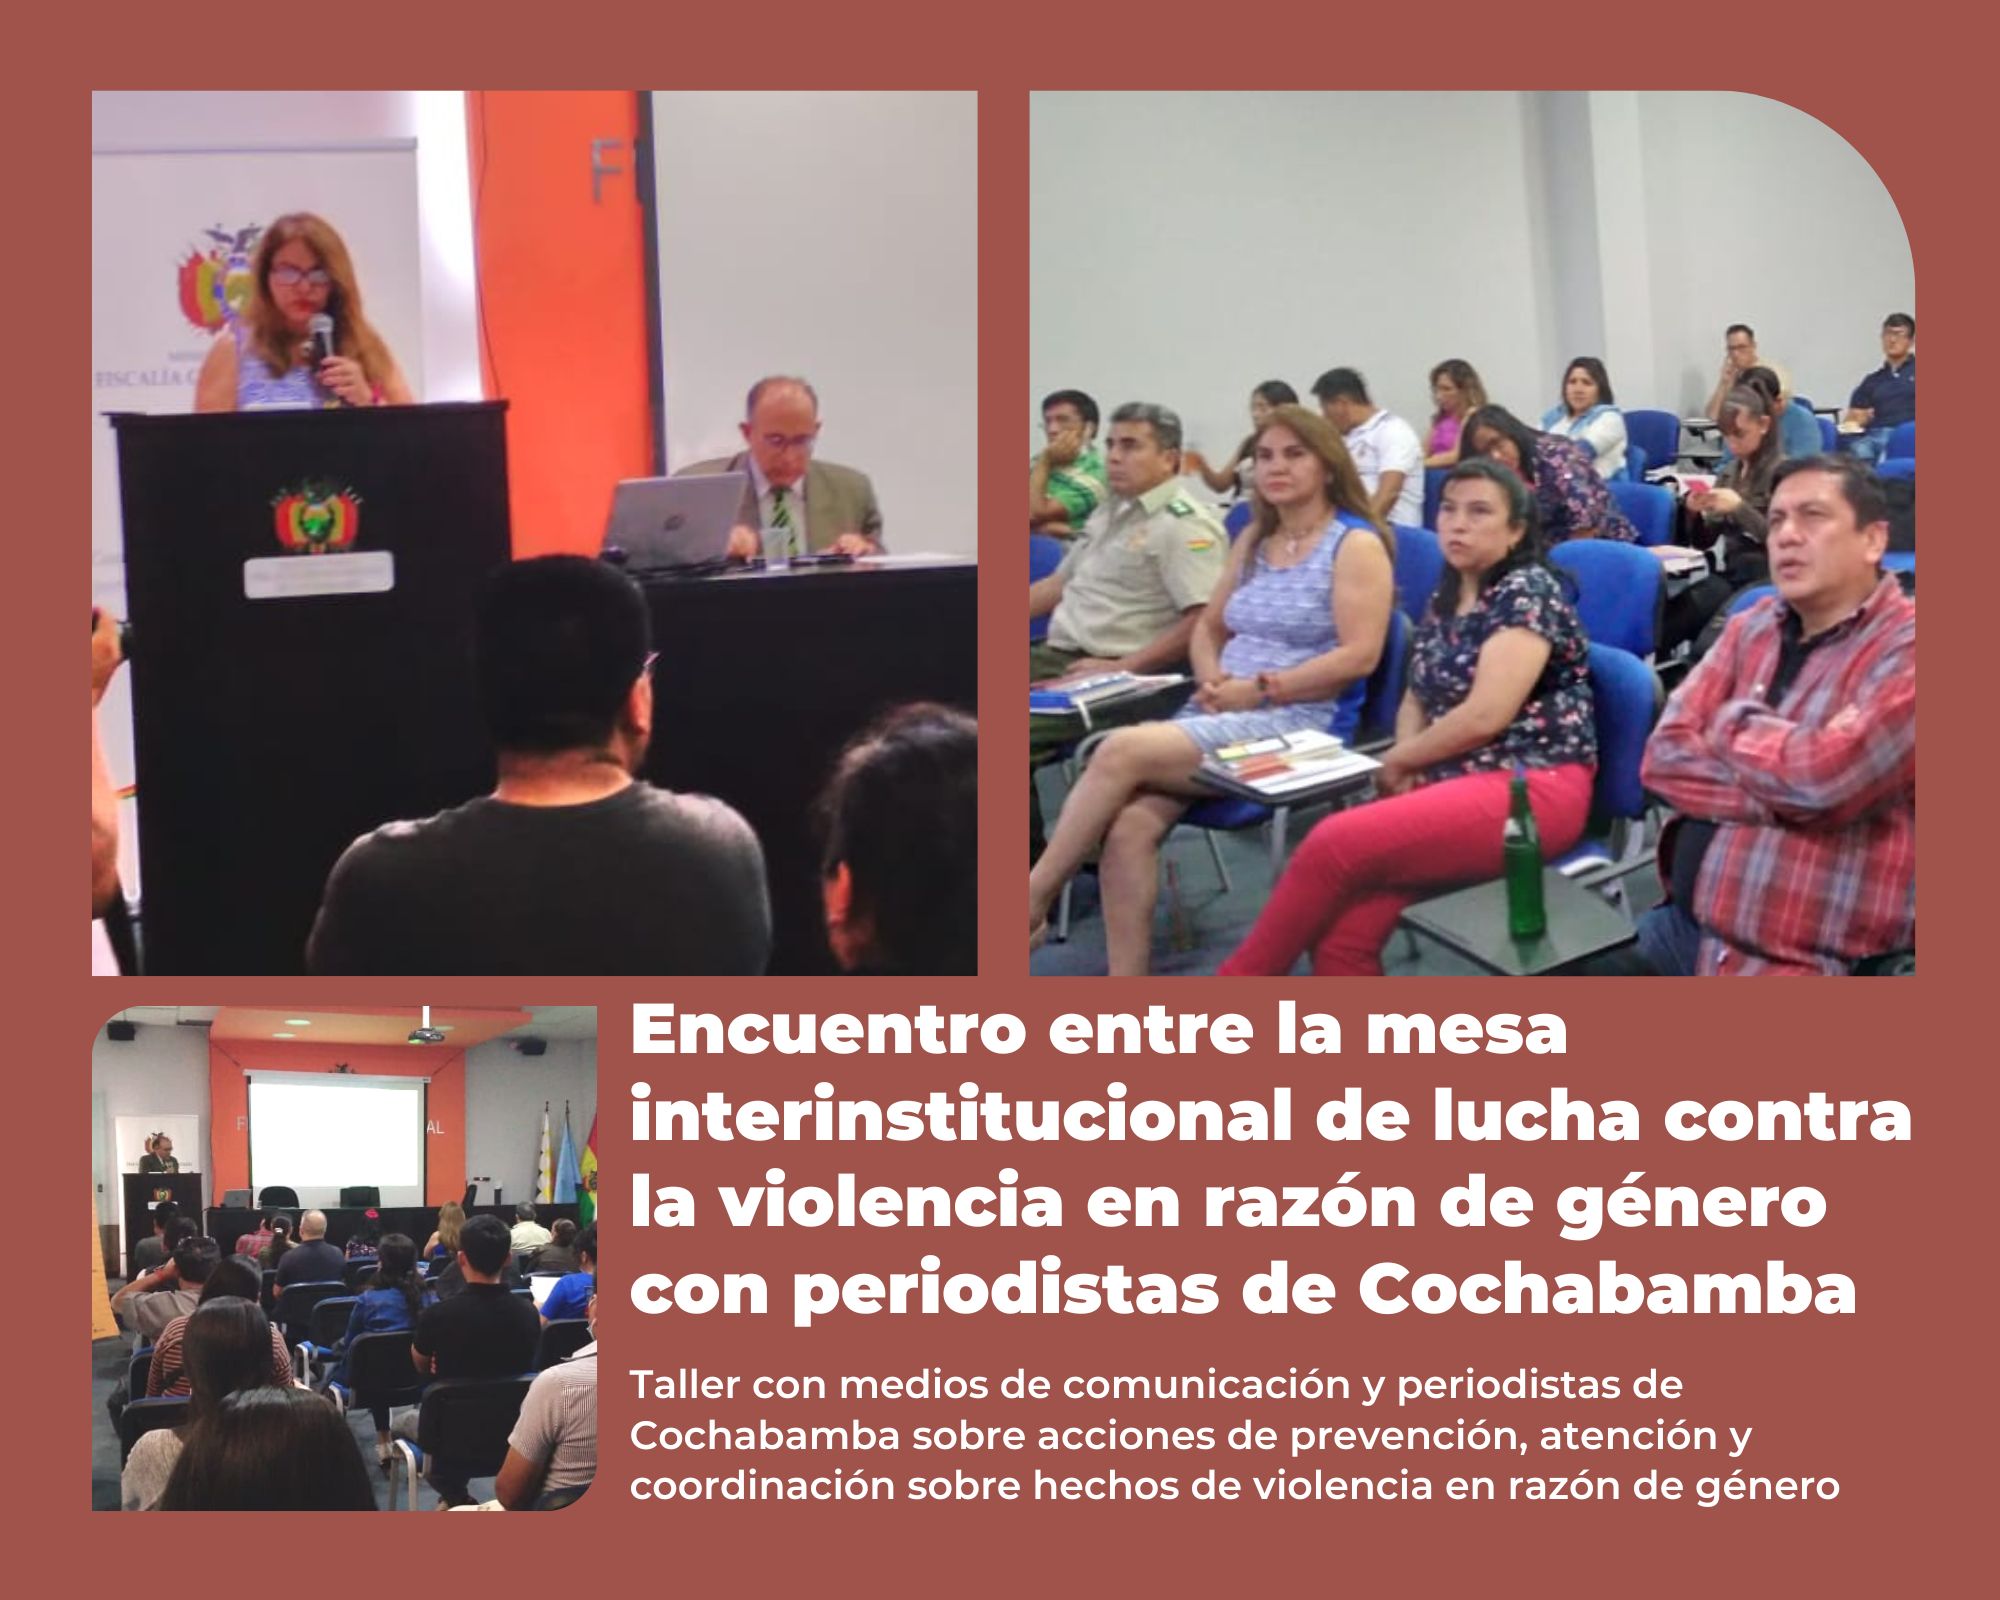 Encuentro entre la mesa interinstitucional de lucha contra la violencia en razón de género con los periodistas de Cochabamba